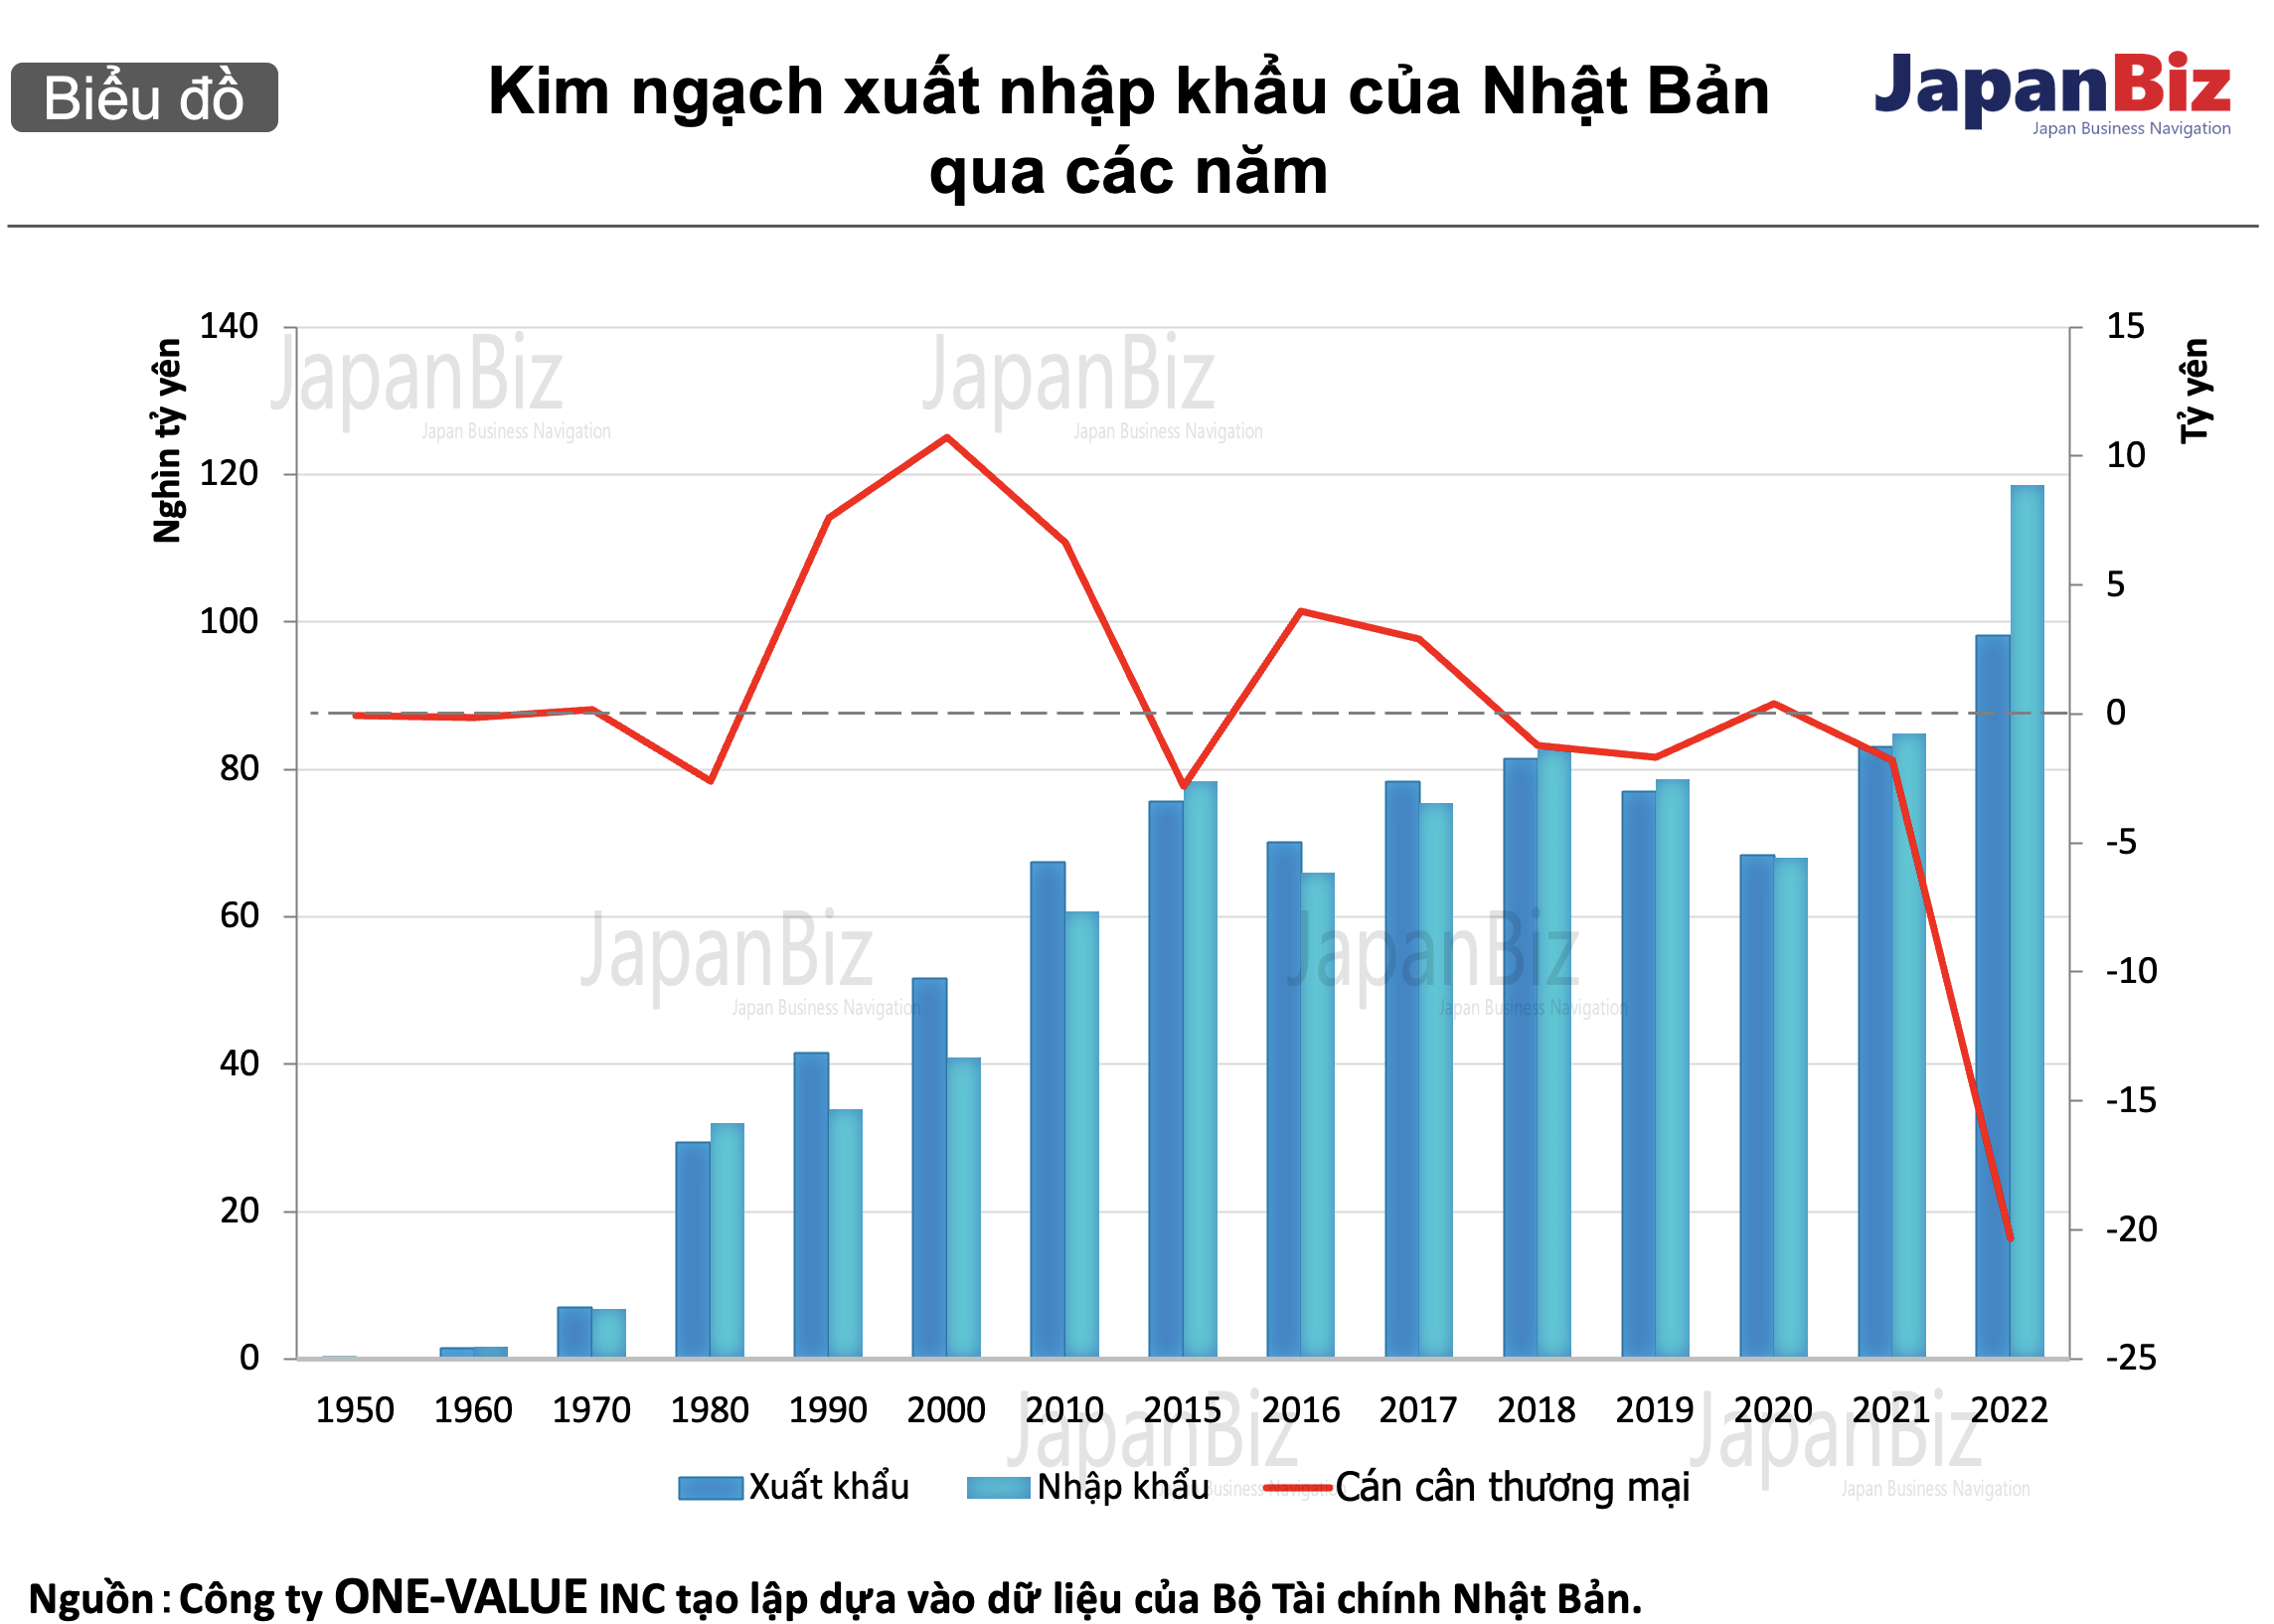 Kim ngạch xuất nhập khẩu của Nhật Bản qua các năm